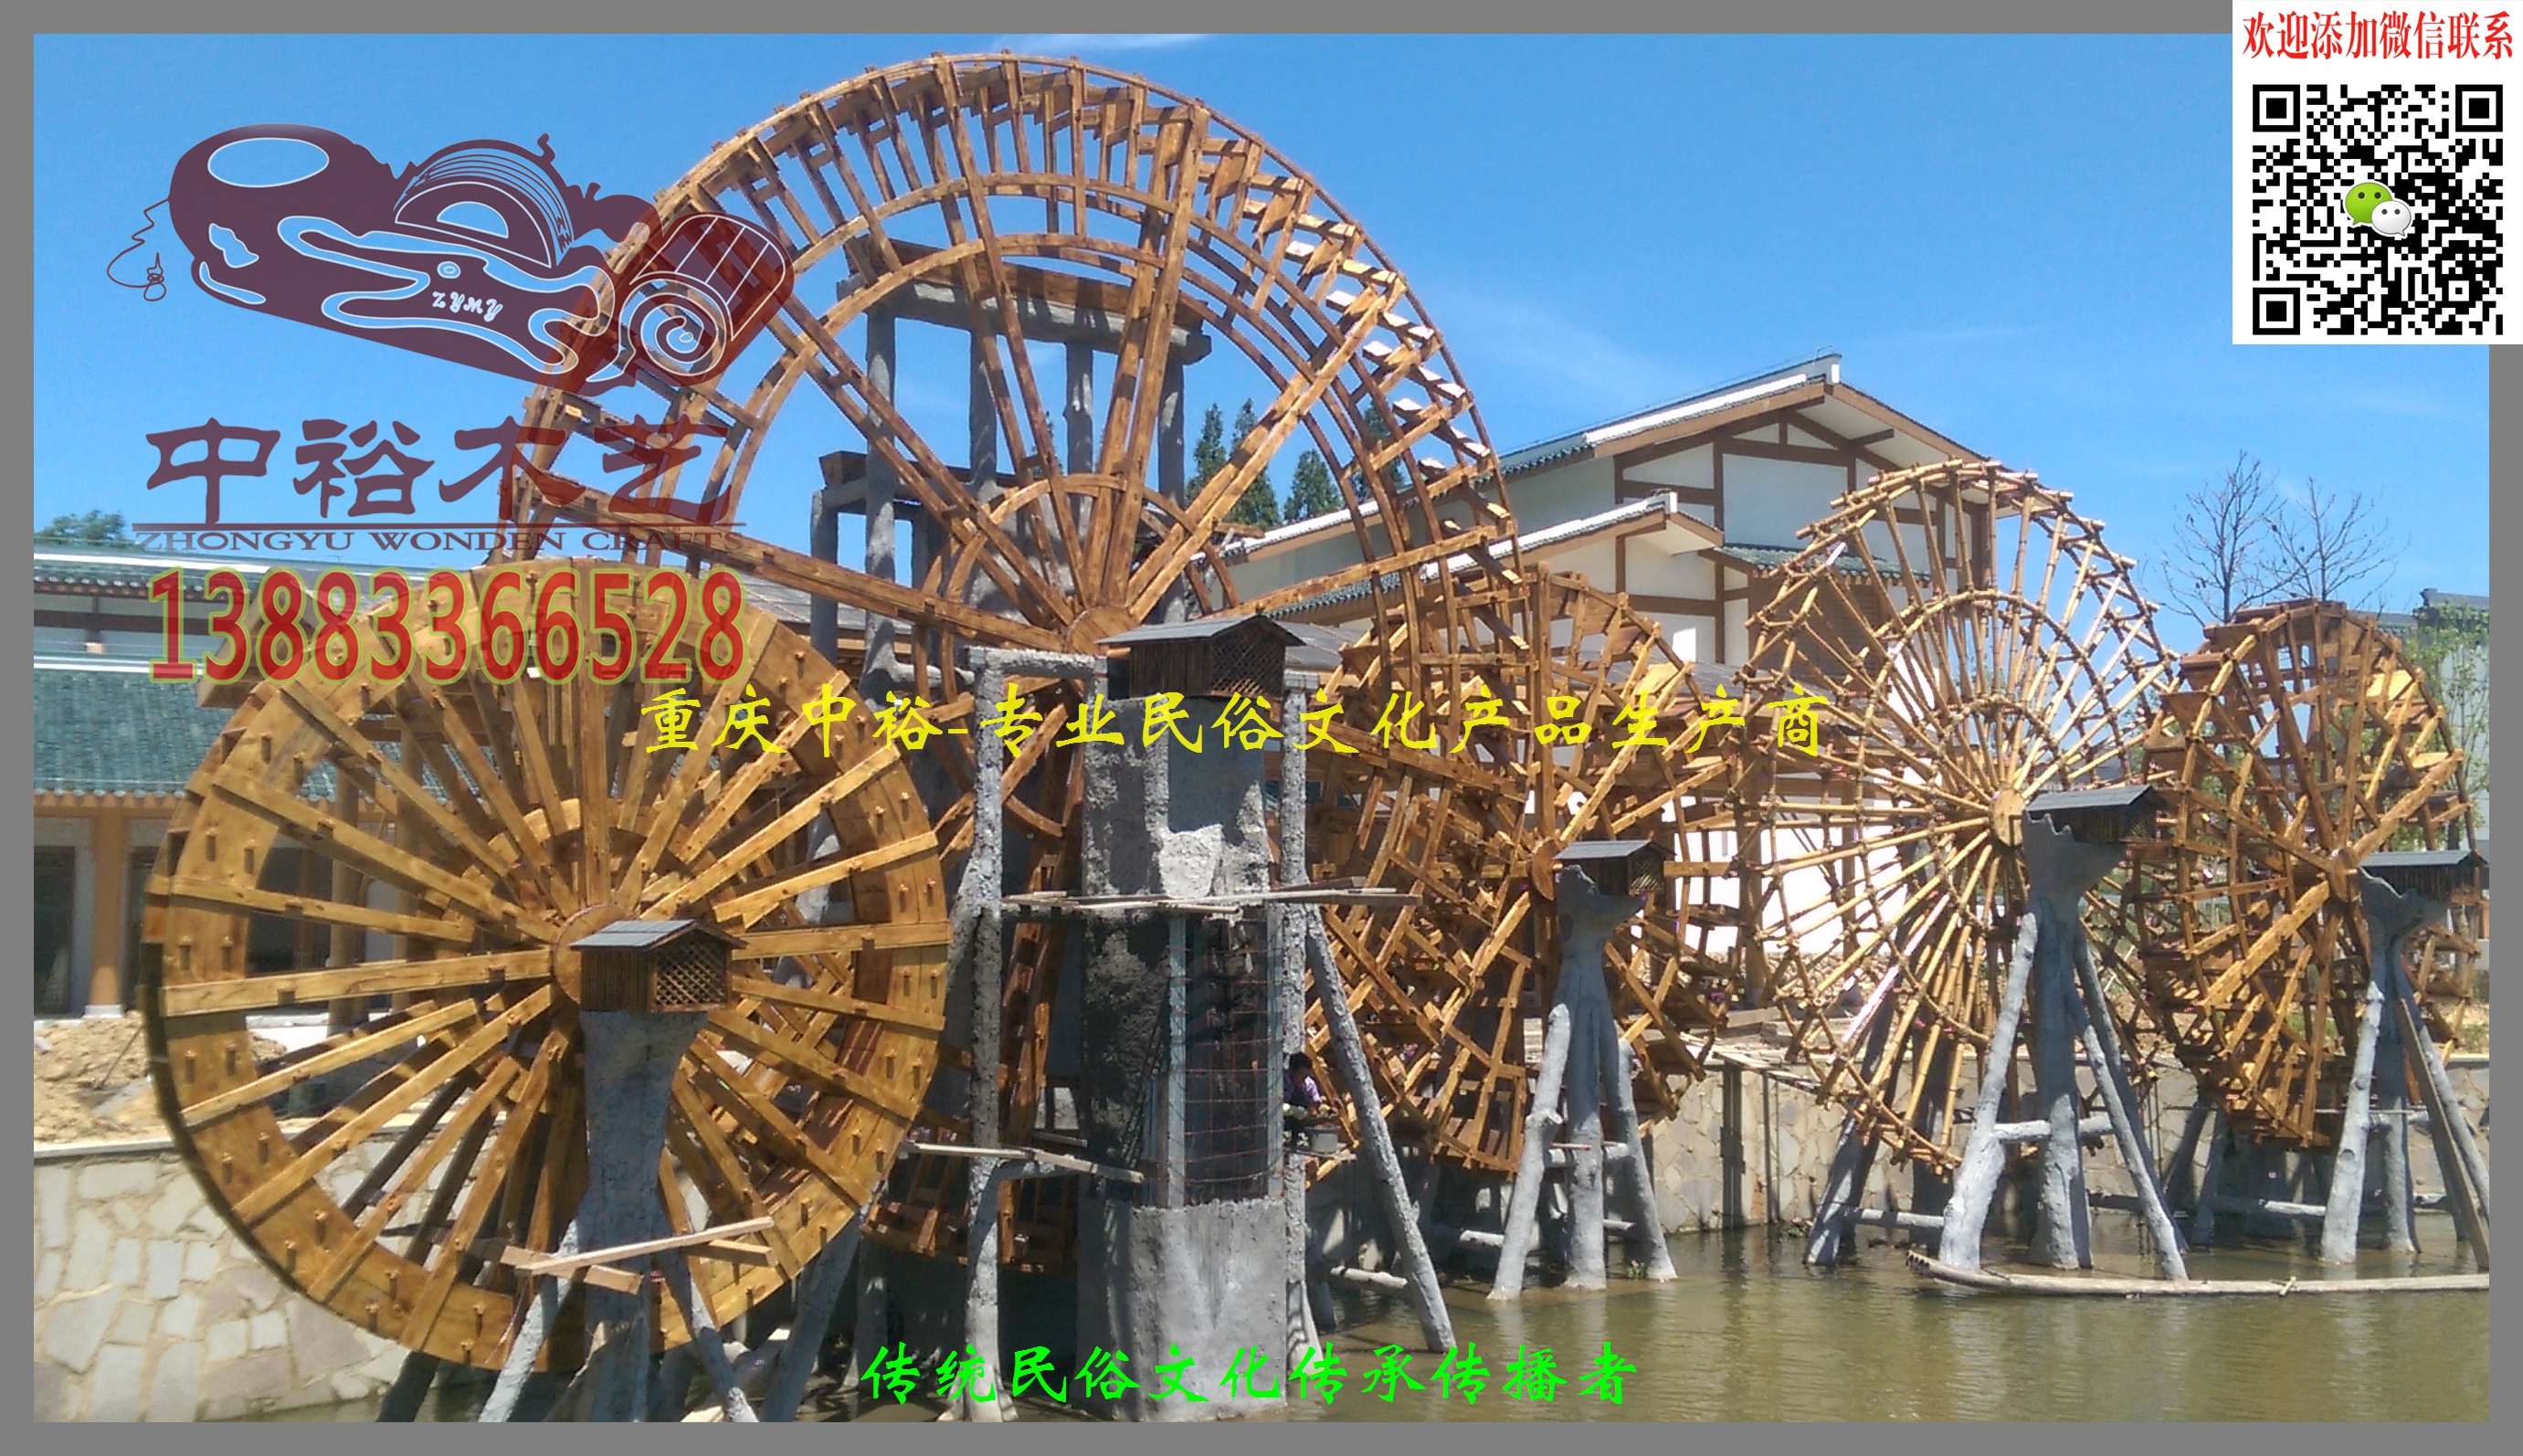 重庆园林风景区景观水车群仿古中式观赏水车厂家制作加工